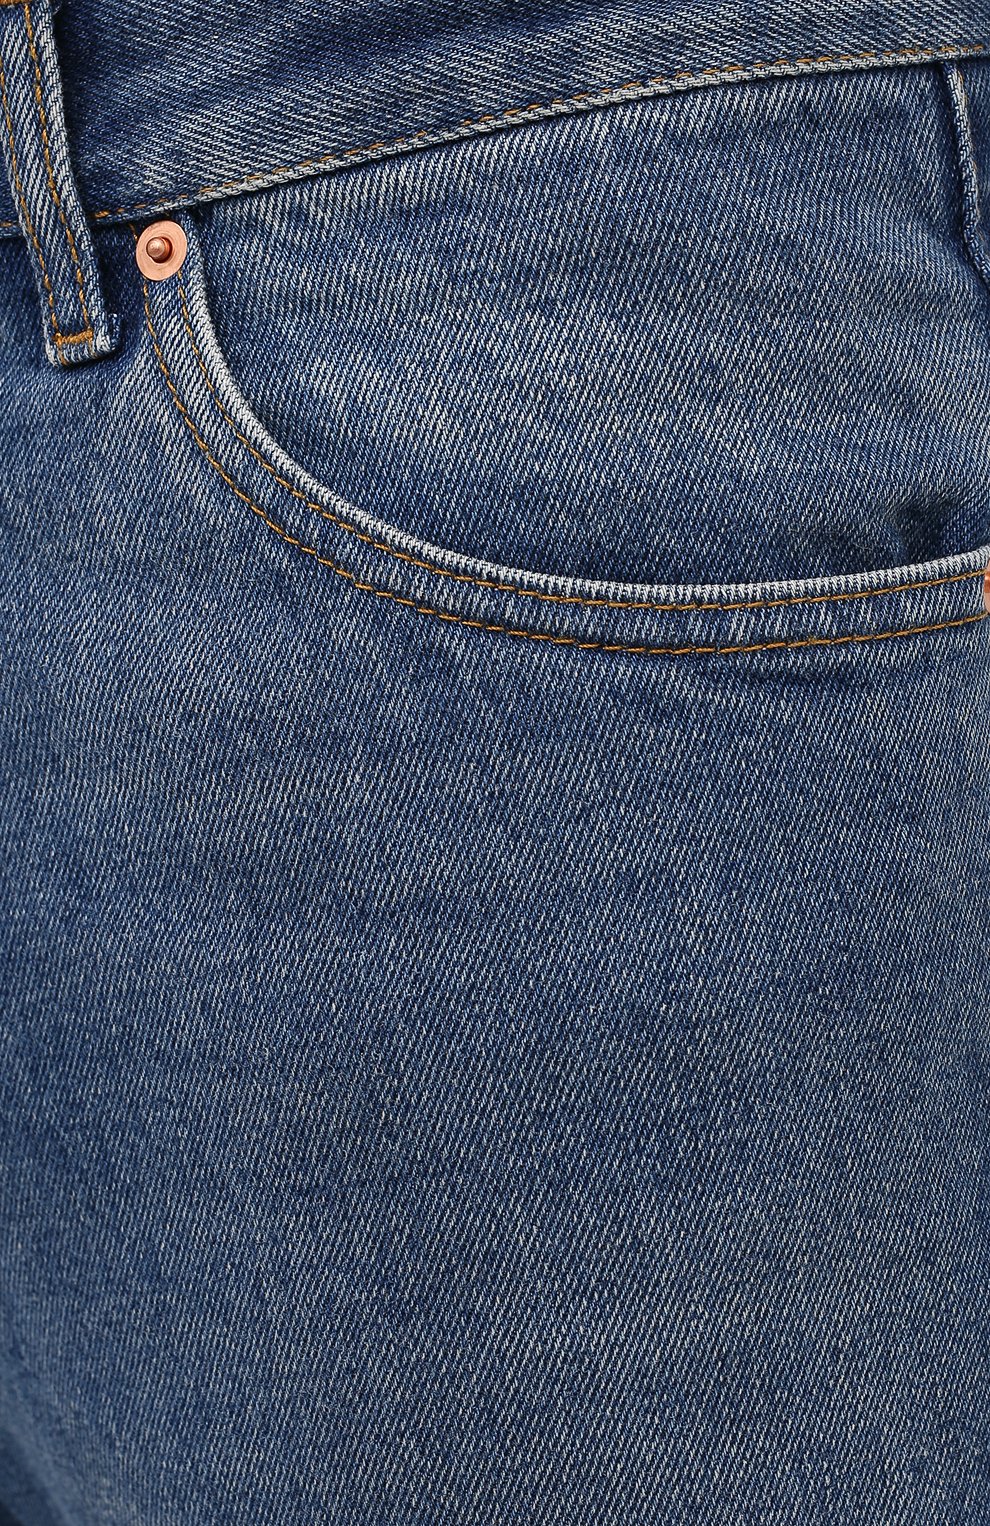 Мужские джинсы GUCCI синего цвета, арт. 623953/XDBBQ | Фото 5 (Силуэт М (брюки): Прямые; Кросс-КТ: Деним; Длина (брюки, джинсы): Стандартные; Материал внешний: Хлопок, Деним; Детали: Потертости)